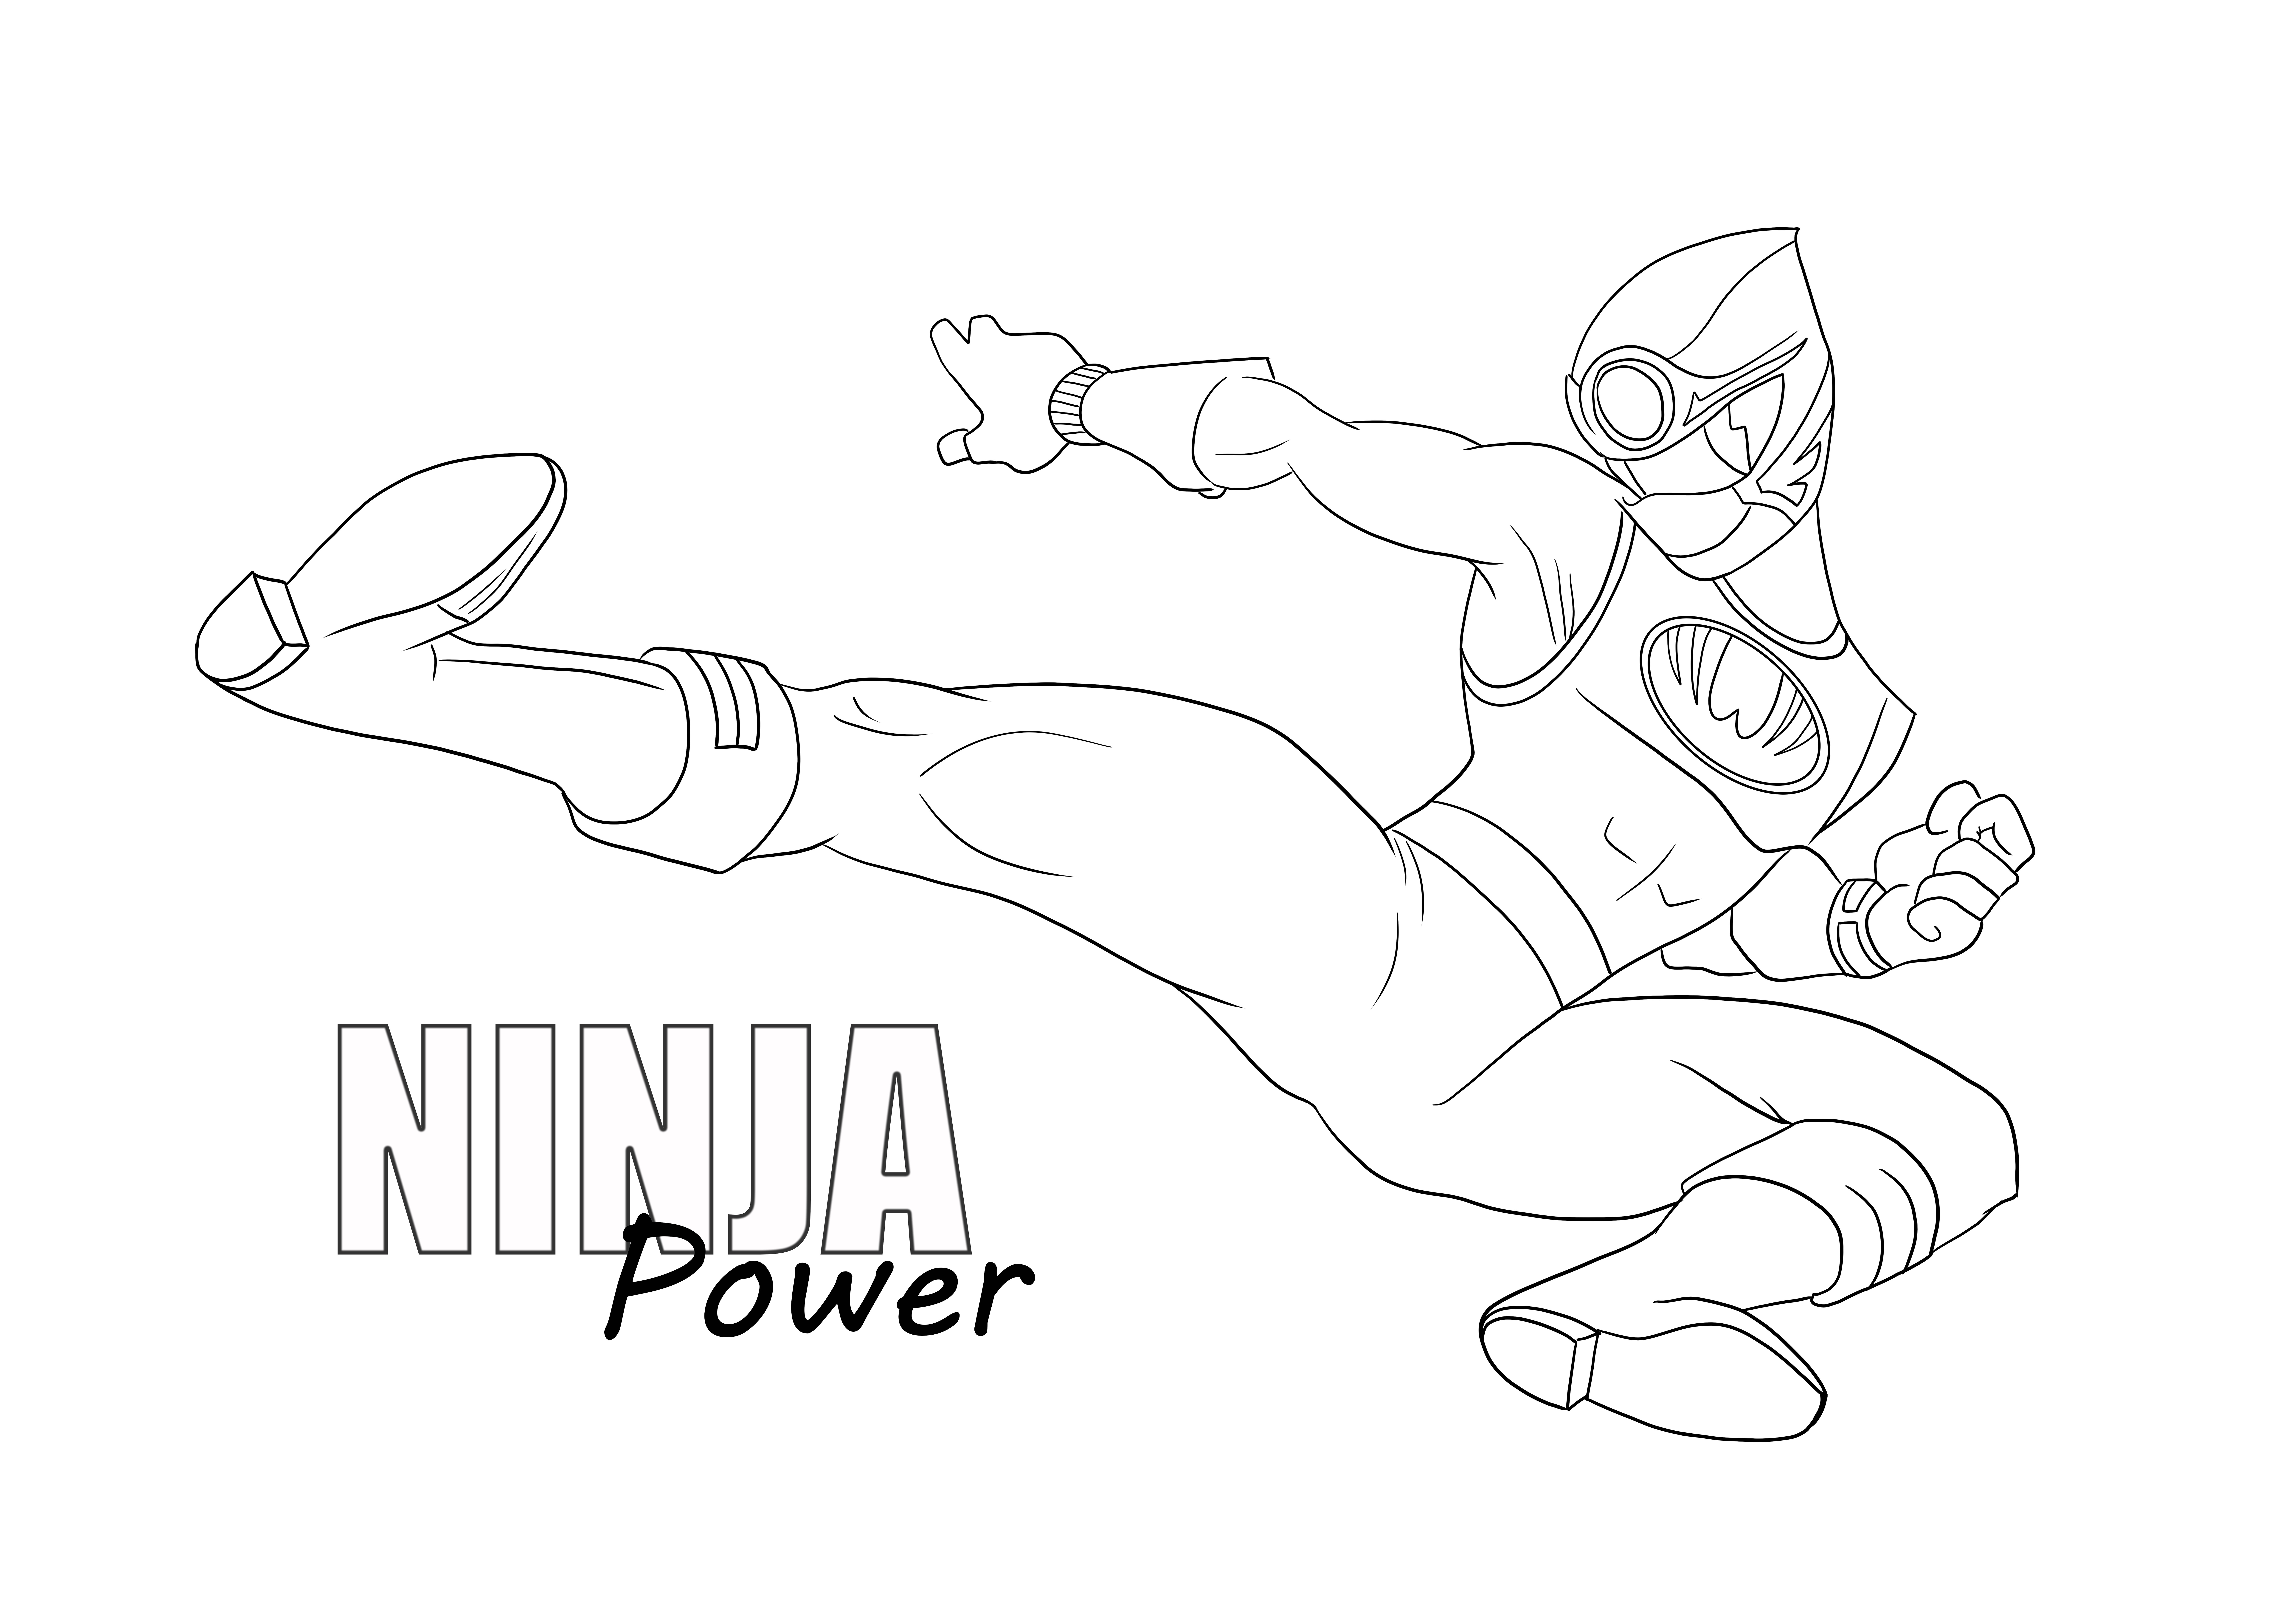 Puterea ninja de a colora și de a imprima gratuit pentru copiii de toate vârstele